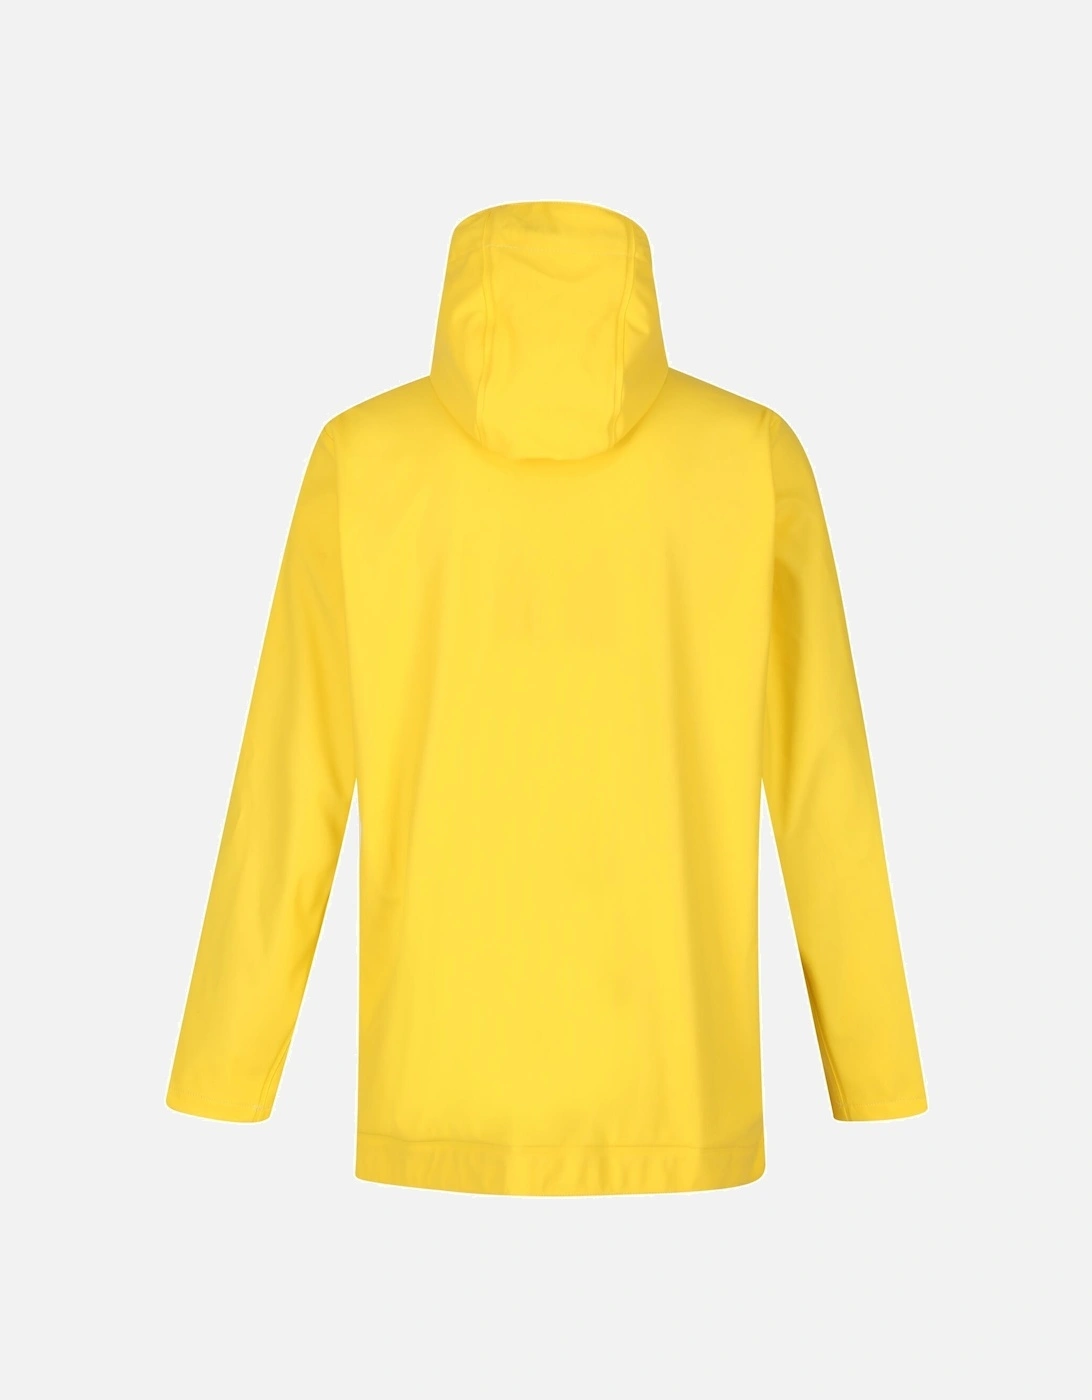 Womens/Ladies Tinsley Waterproof Jacket